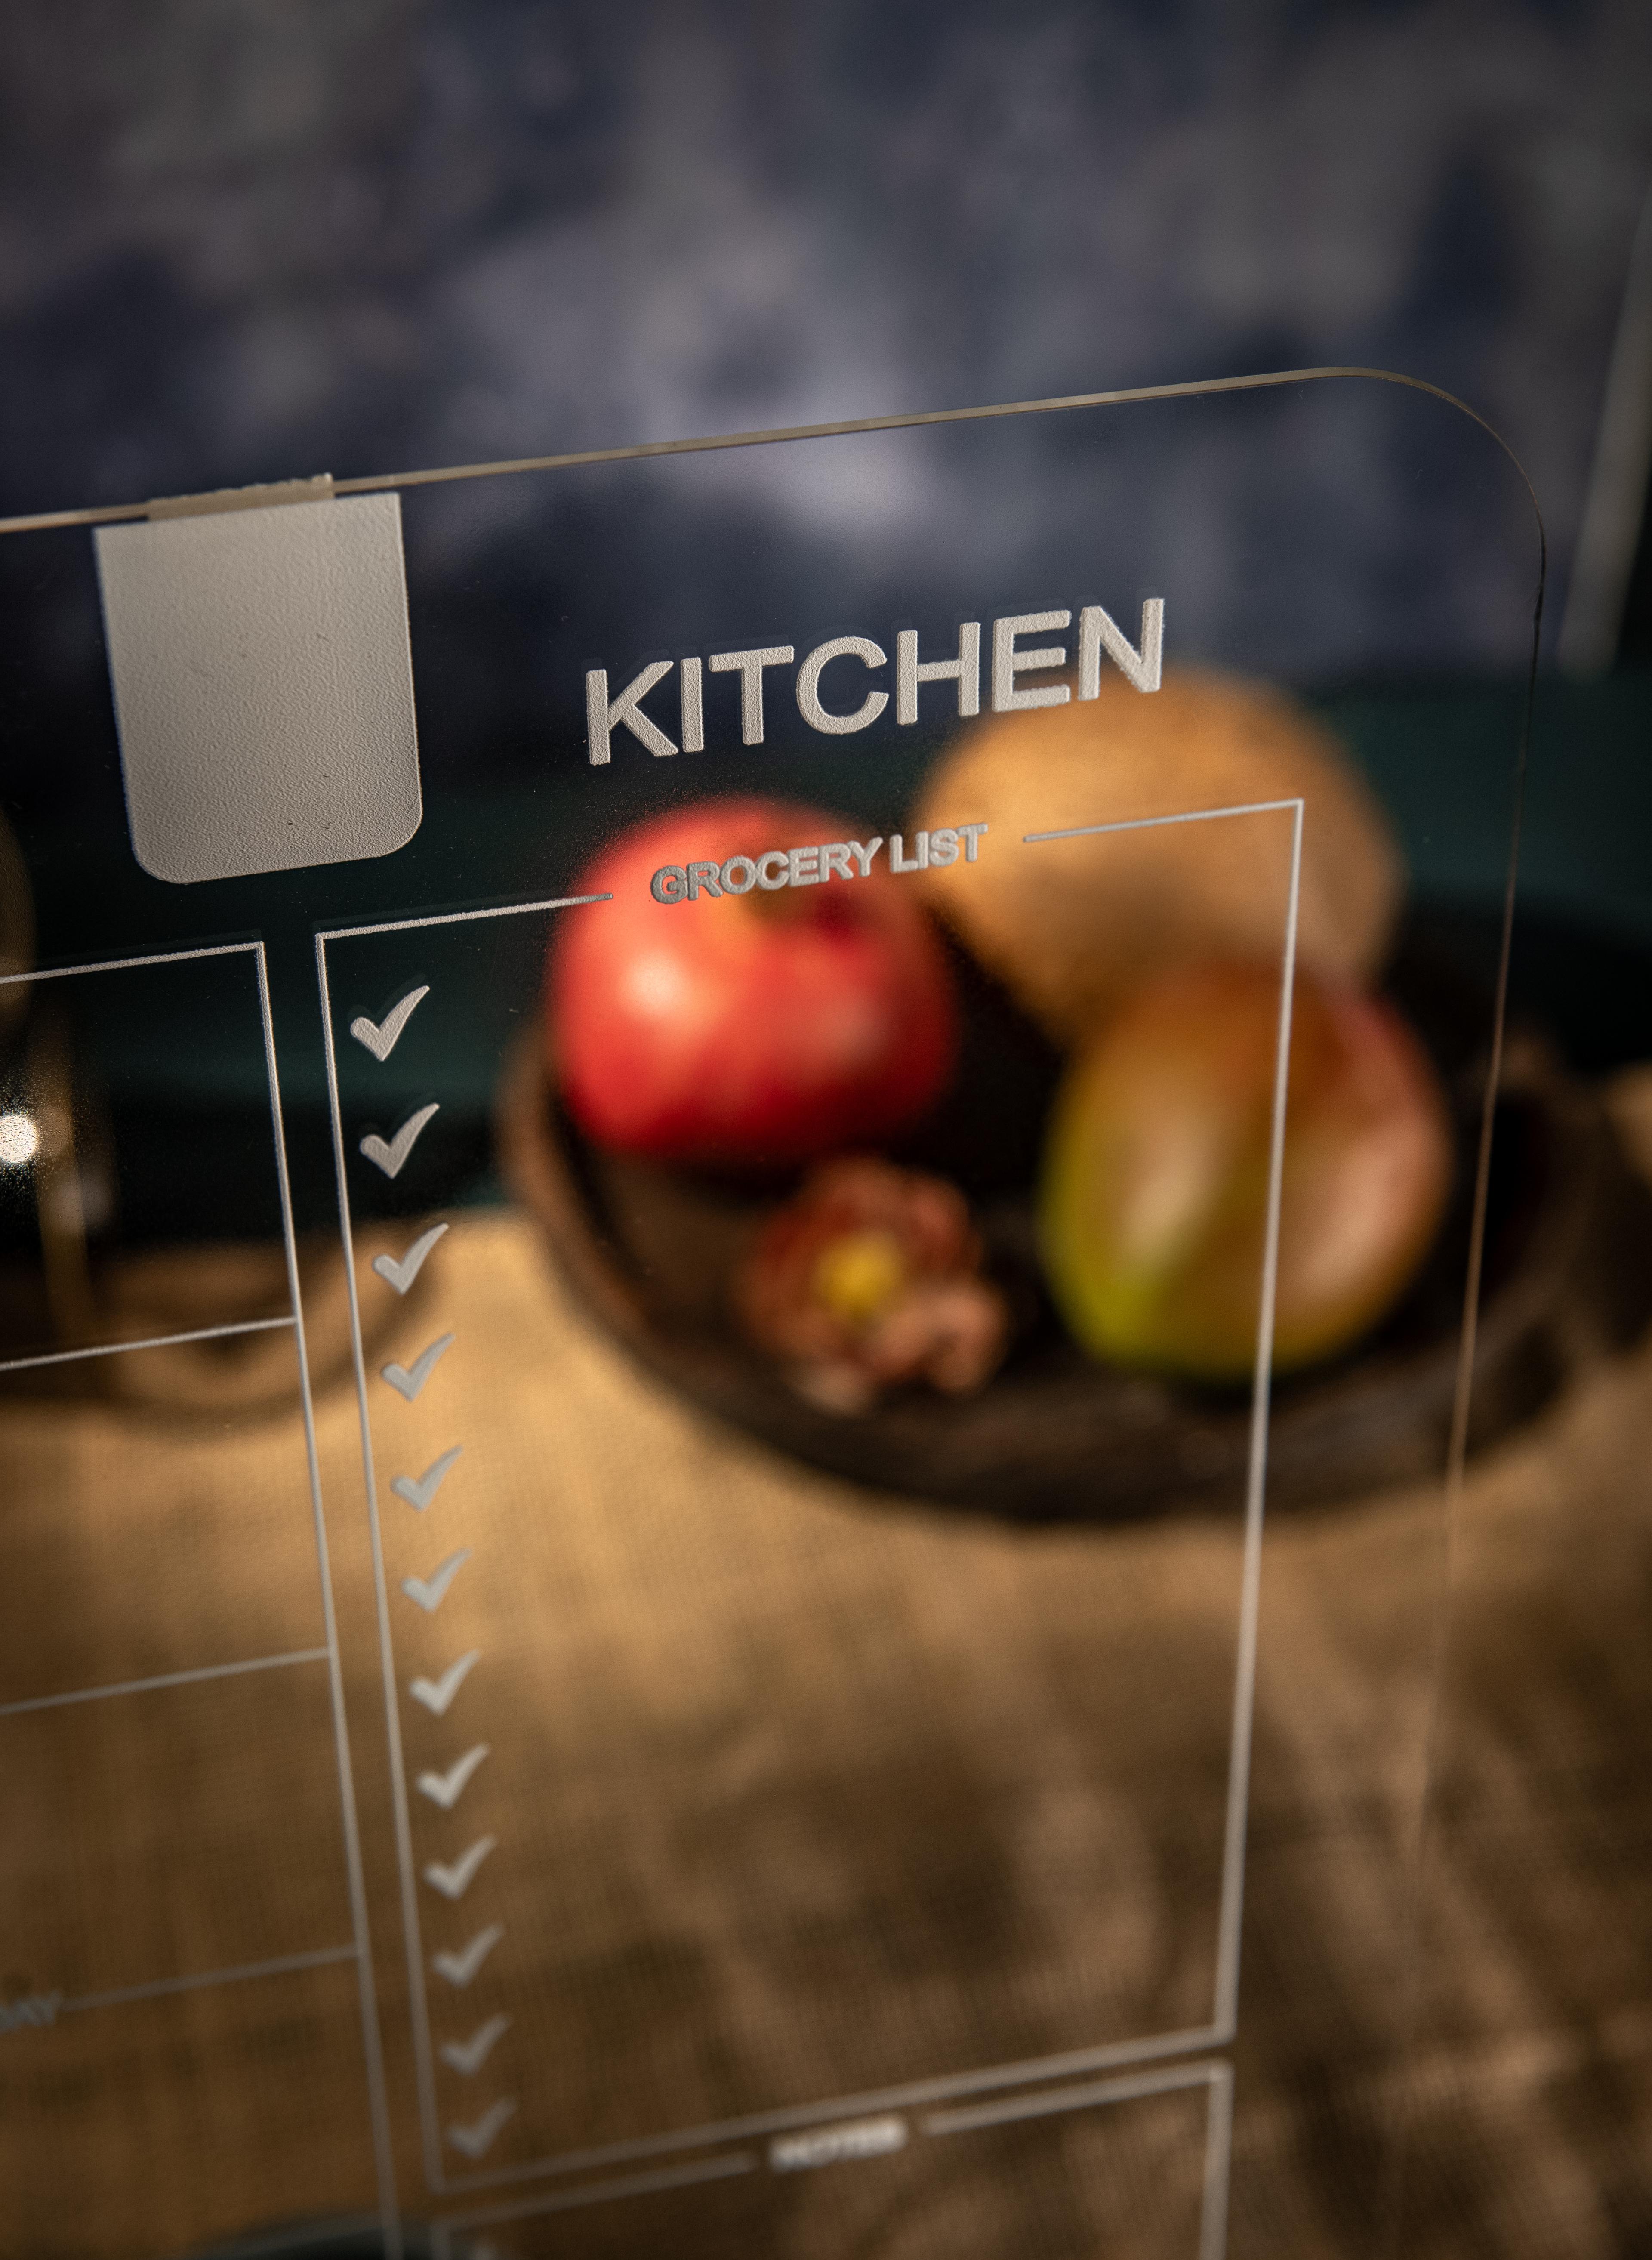 Mutfak Planlayıcı, Silinebilir Pleksi Mutfak Panosu, Yapılacaklar Listesi, Hediye Ürünü - Beyaz Yazılı